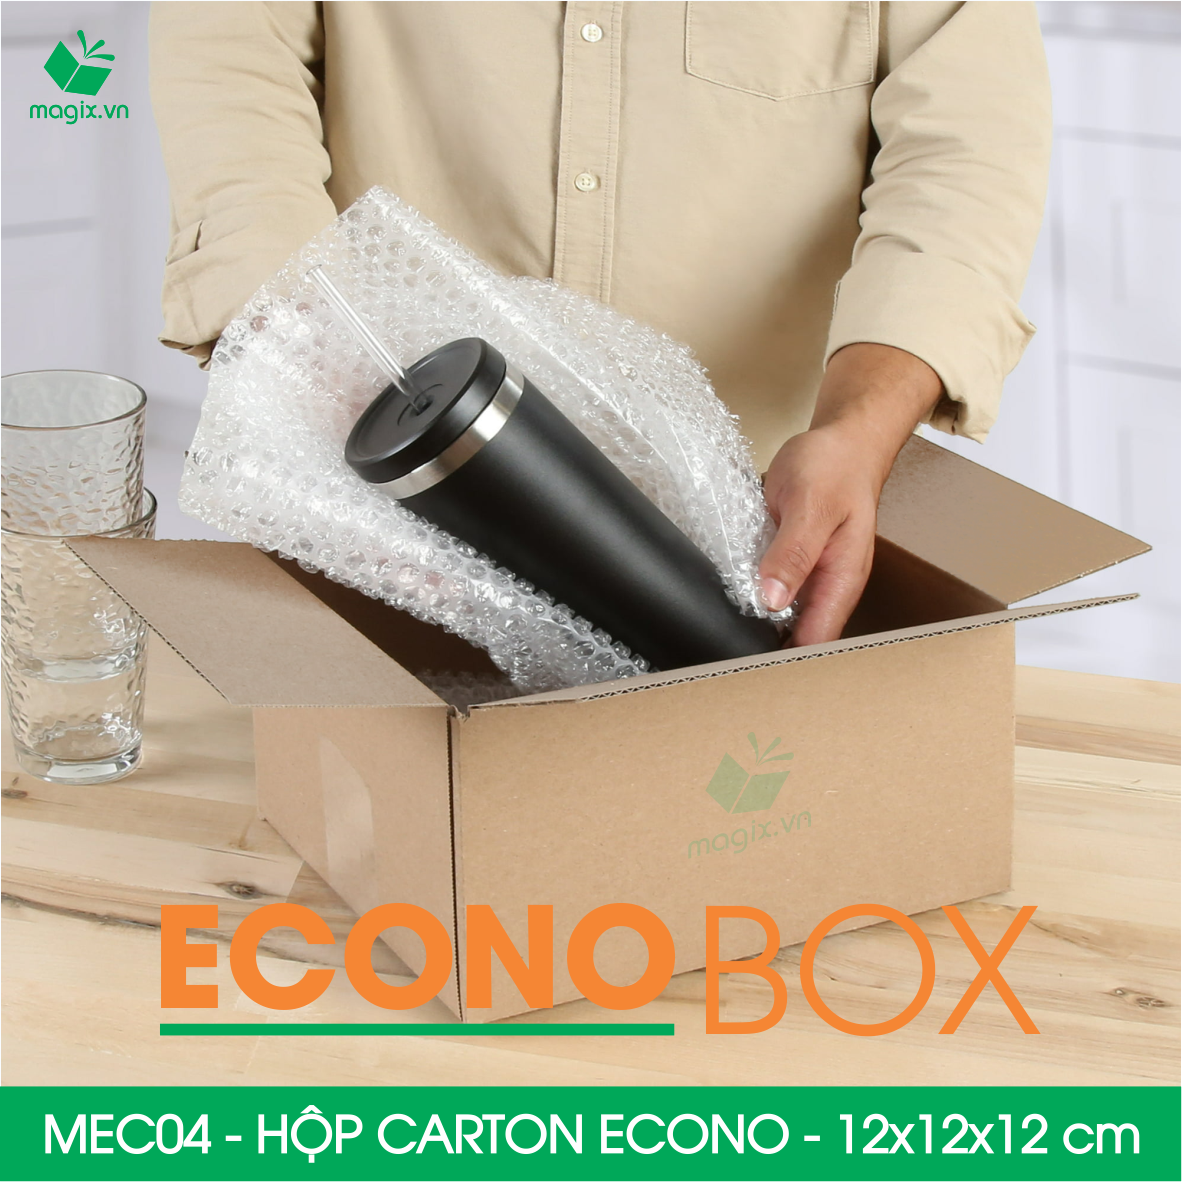 MEC04 - 12x12x12 cm - Combo 60 thùng hộp carton trơn siêu tiết kiệm ECONO